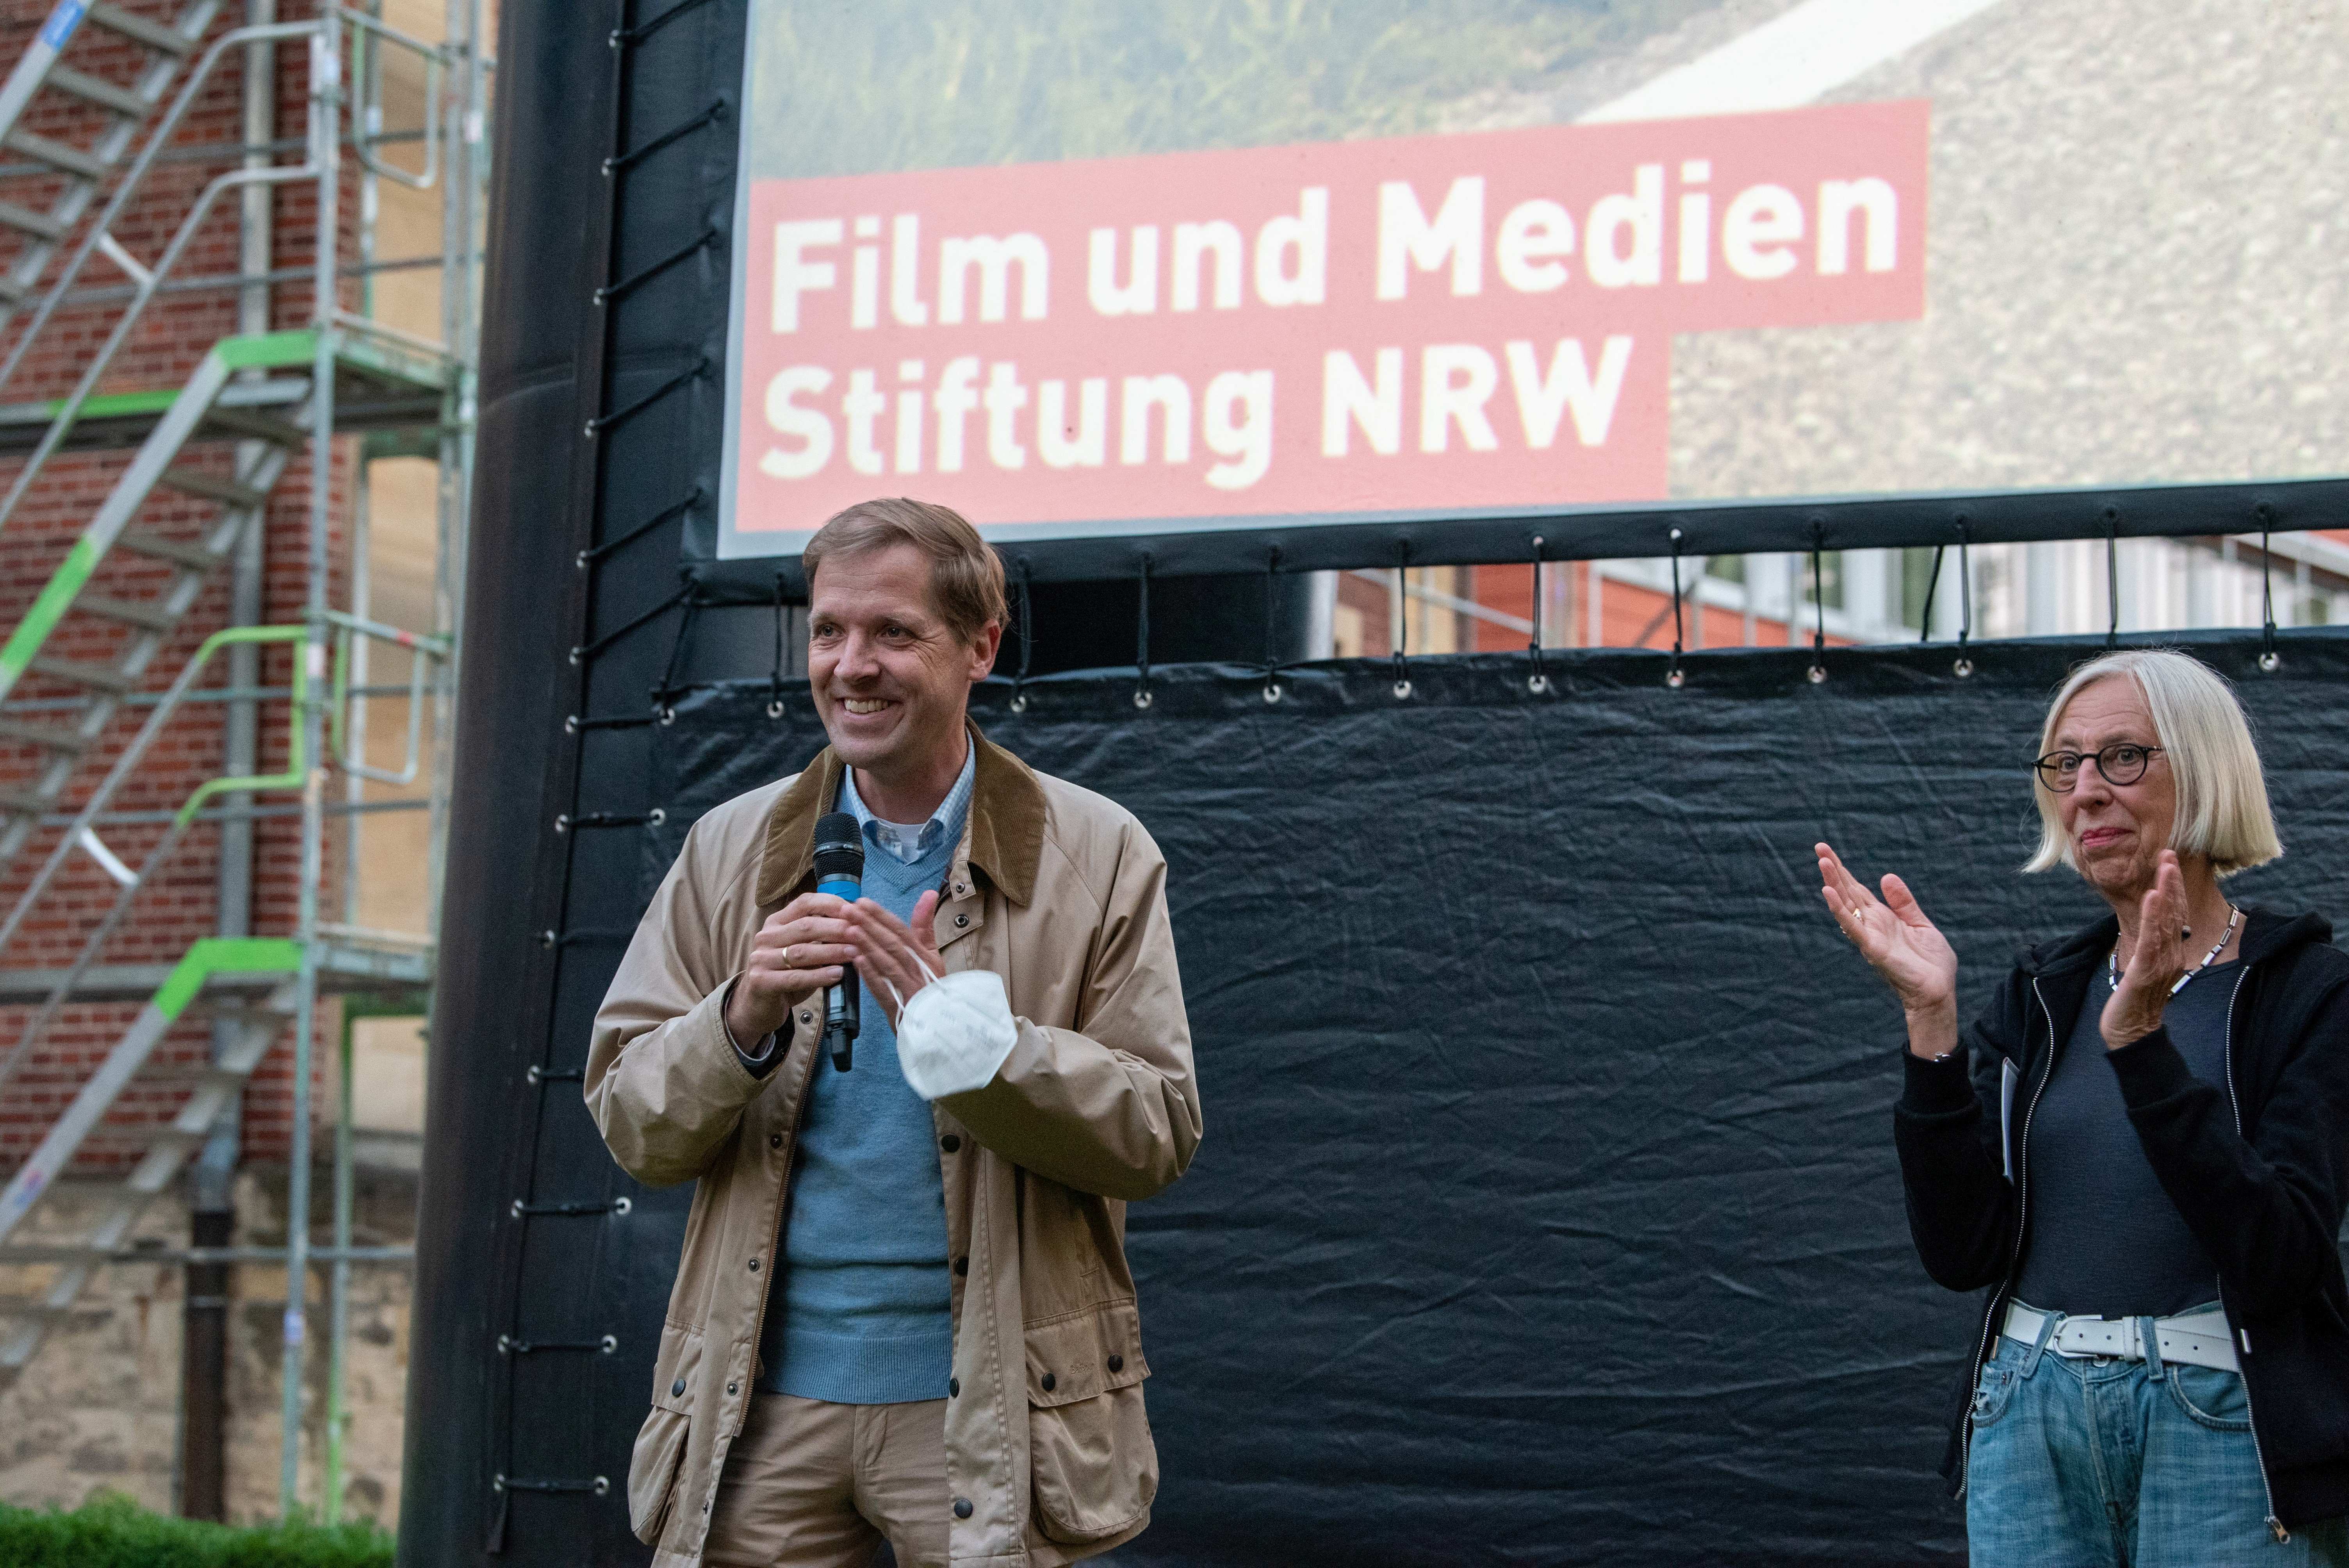 Anna Fantl (Projektleiterin der Film- und Medien-Stiftung NRW) und Landrat Dr. Christian Schulze Pellengahr bedanken sich für die rege Teilnahme am ersten Open-Air-Kinoabend nach dem Lockdown.